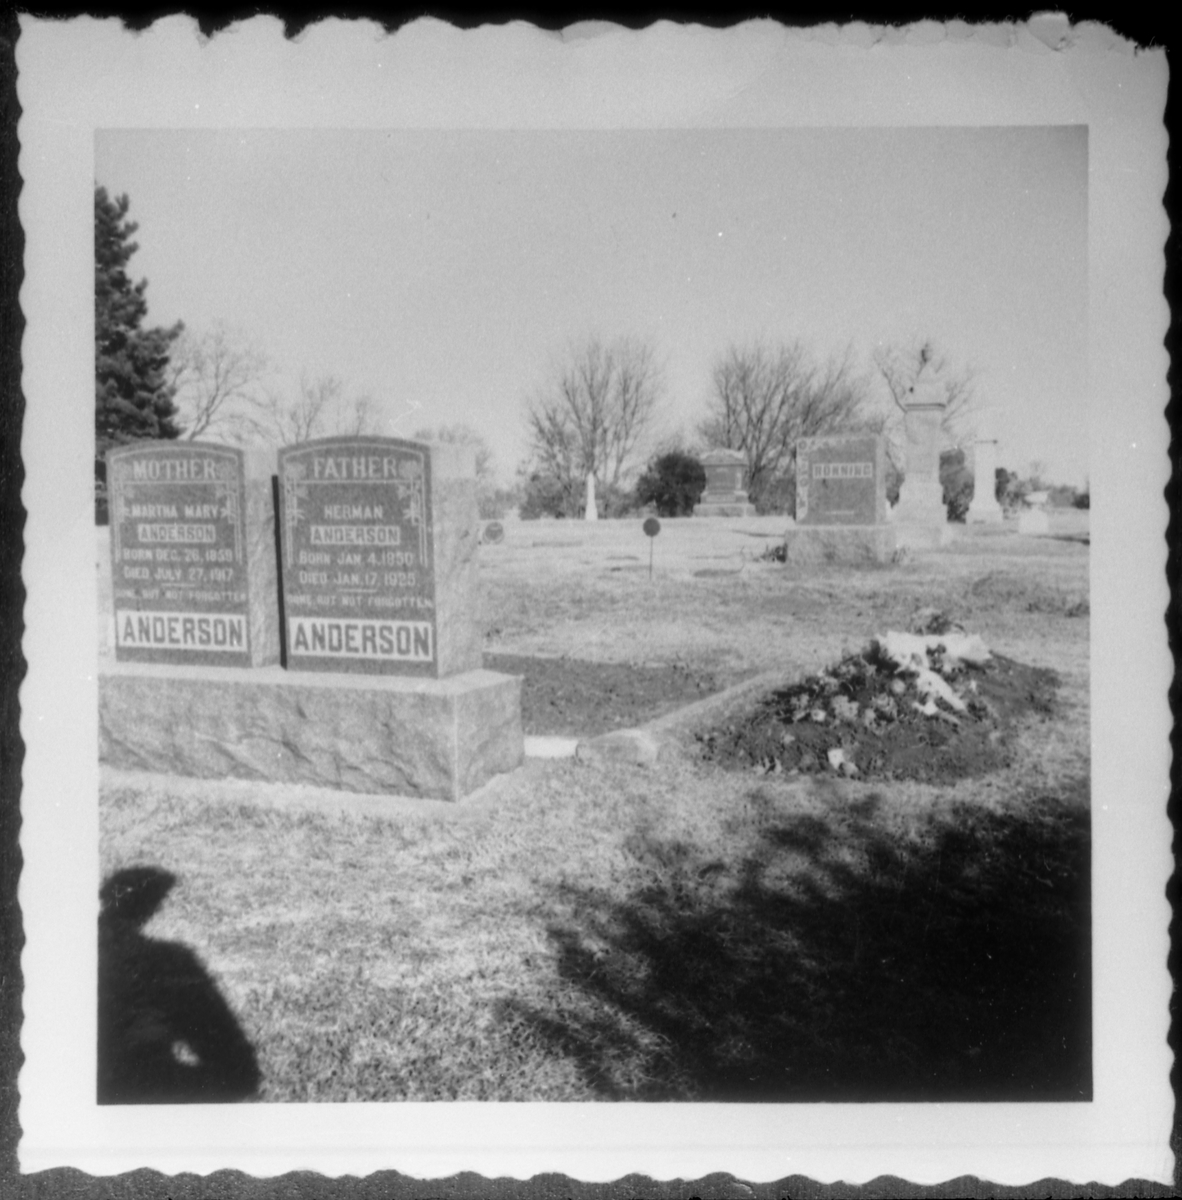 Avfotograert bilde av et familiegravsted, tydeligvis i et engelskspråklig land. På to gravstøtter står navnene Martha og Herman Anderson, døde hhv. 1917 og 1925.